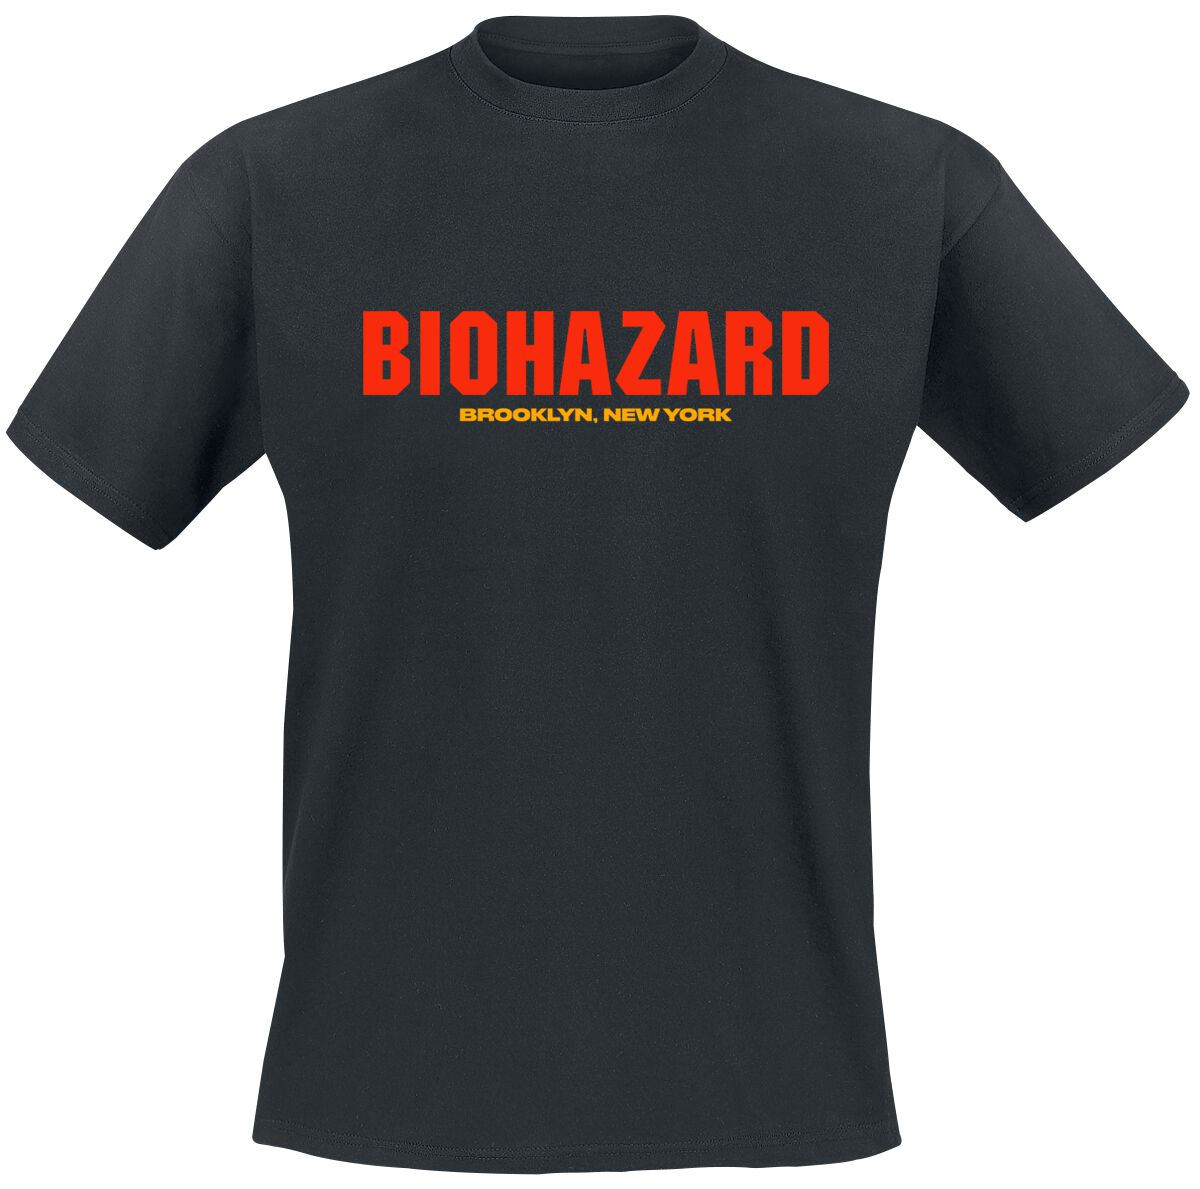 Biohazard T-Shirt - Urban discipline - S bis 4XL - für Männer - Größe 4XL - schwarz  - Lizenziertes Merchandise!